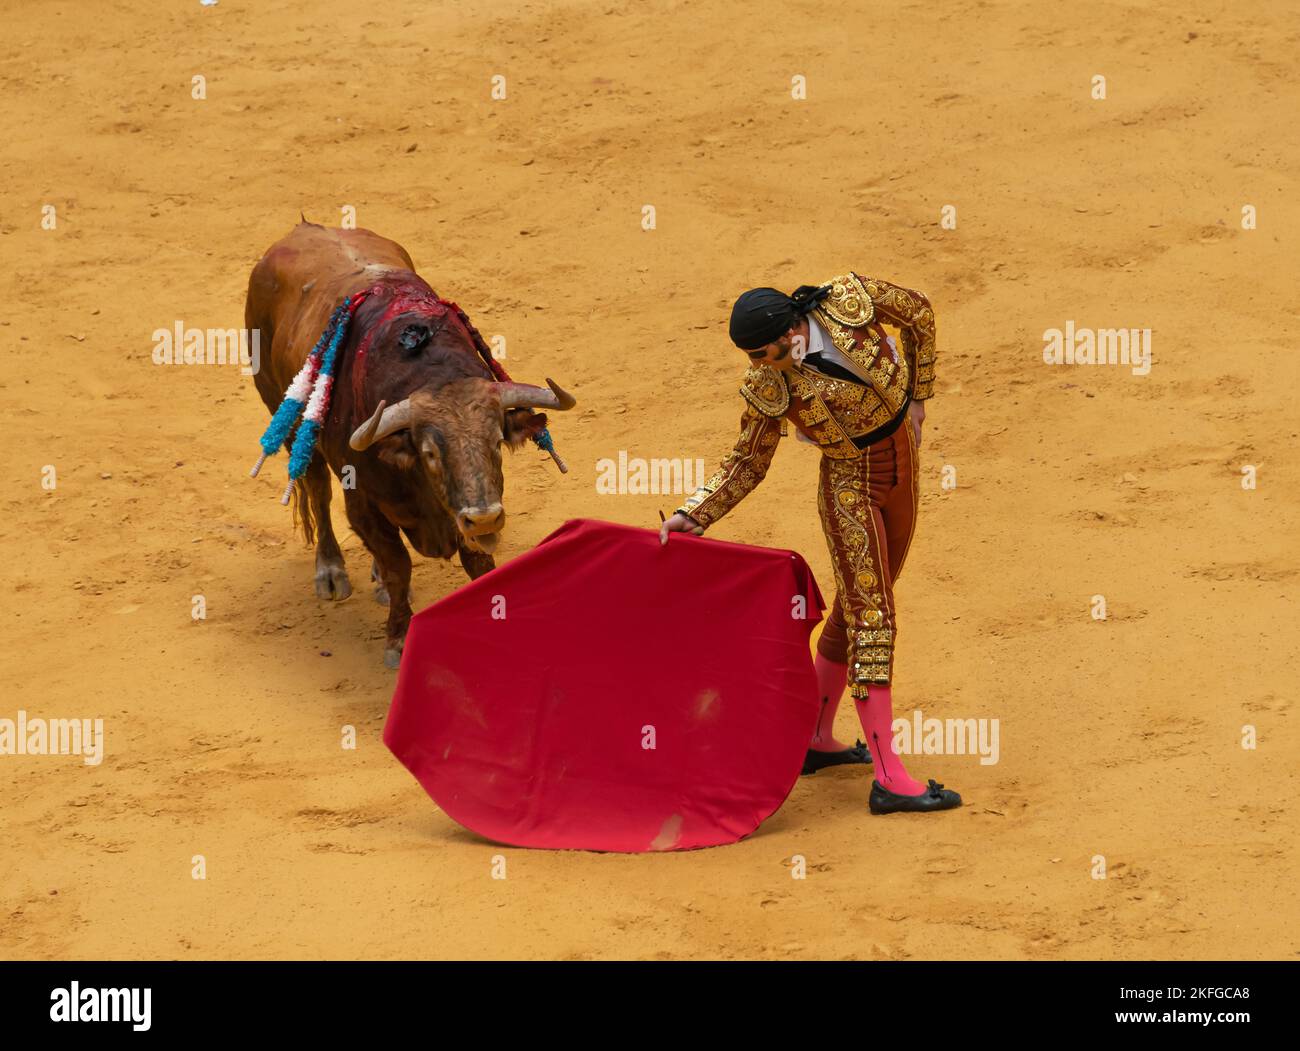 La traditionnelle corrida espagnole, pays basque, Espagne Banque D'Images